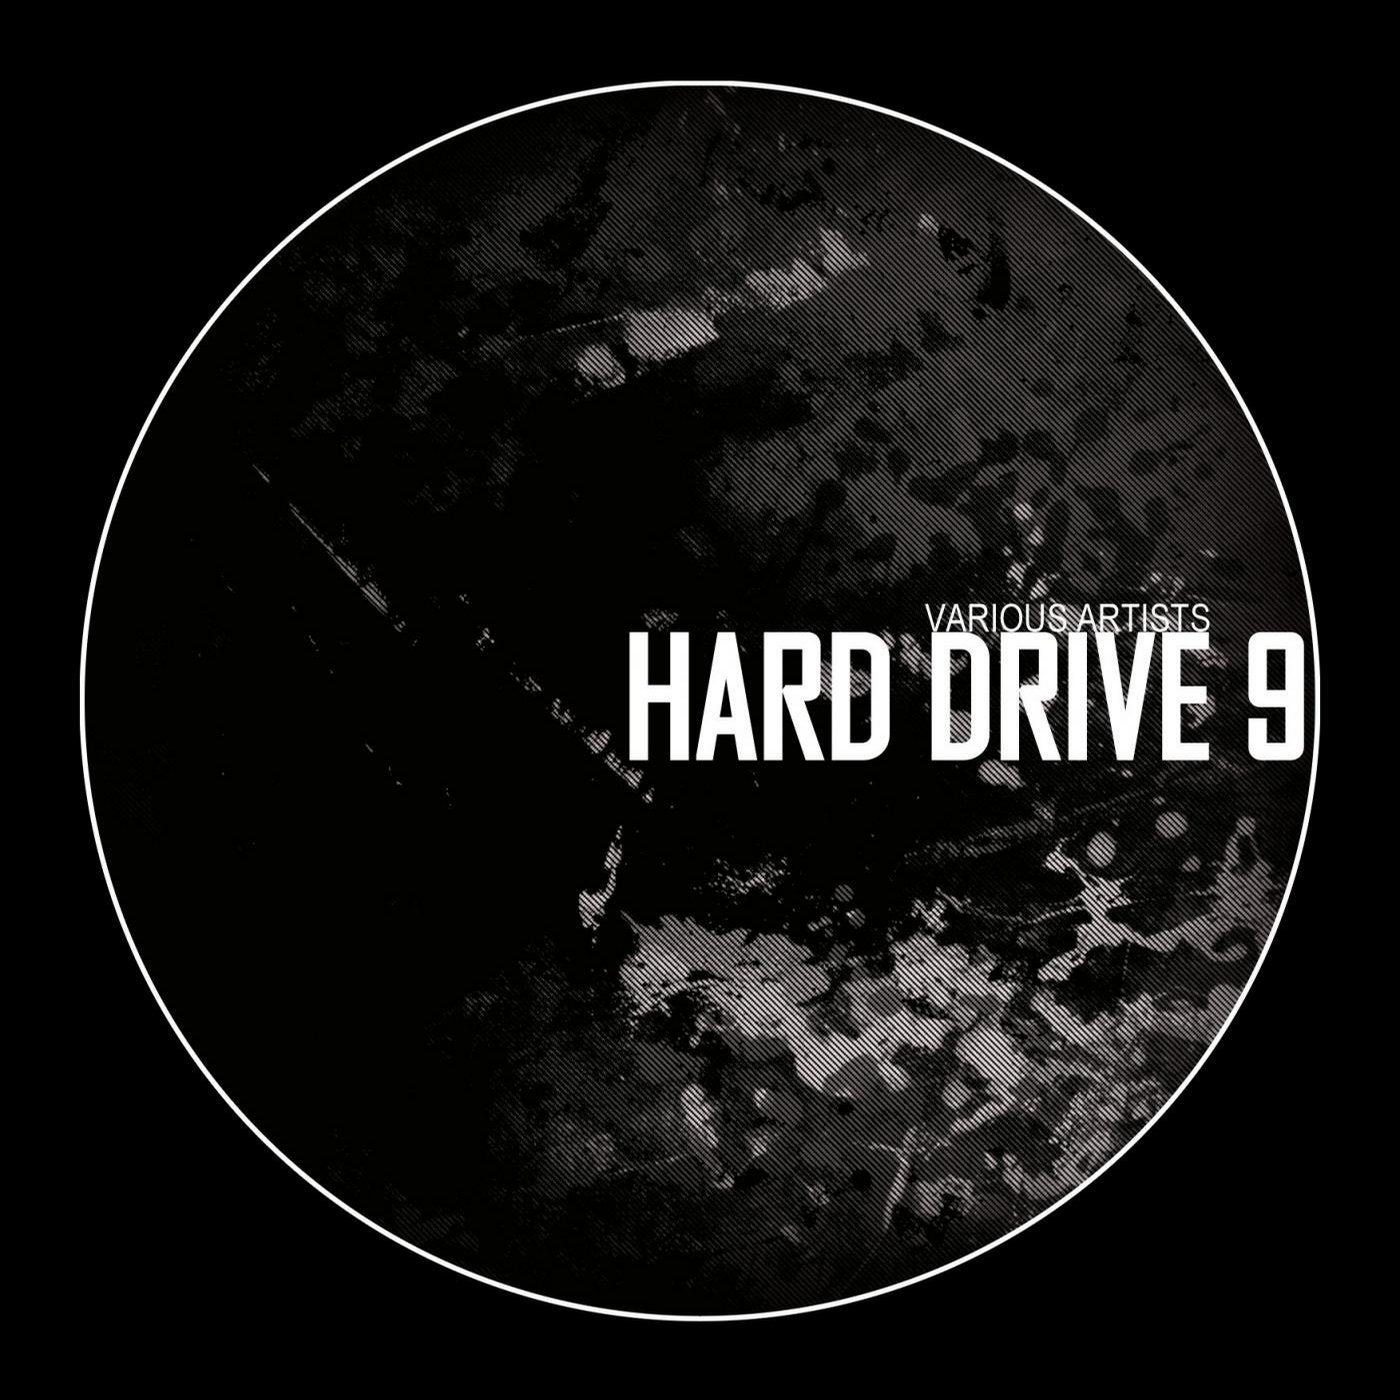 Hard Drive 9